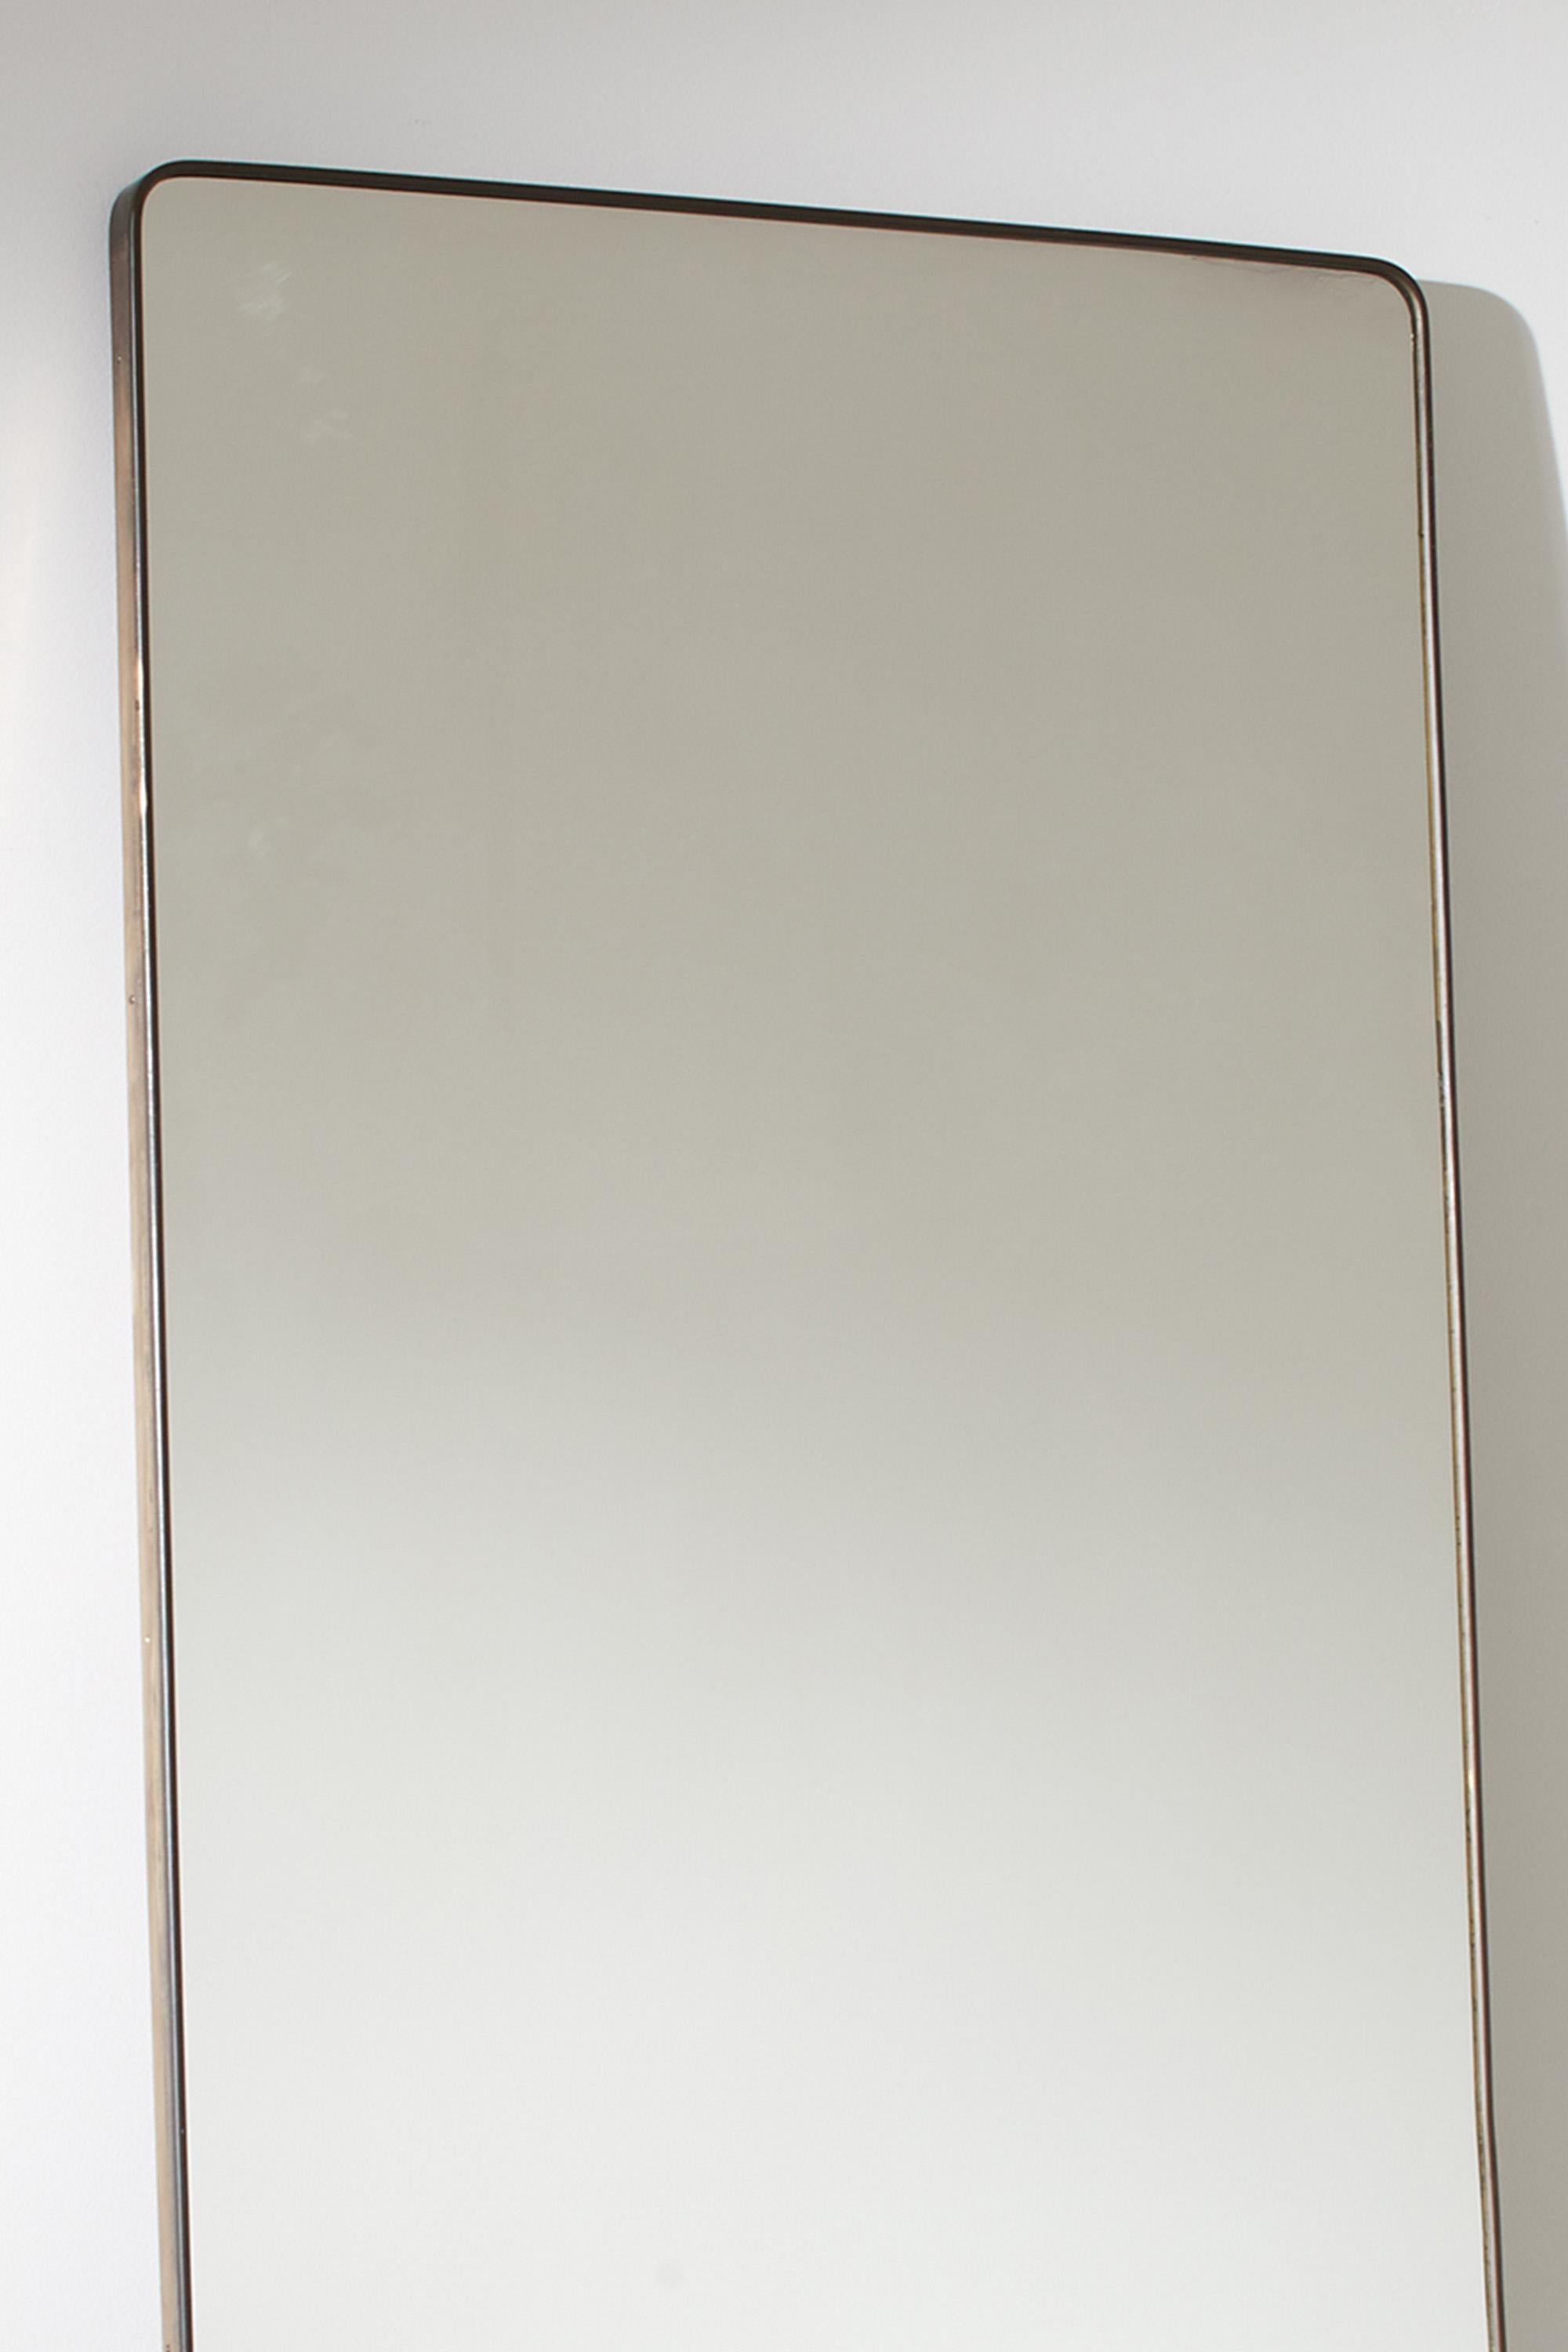 Mid-Century Modern Large Full Length Italian Brass Framed Mirror, 1950s For Sale